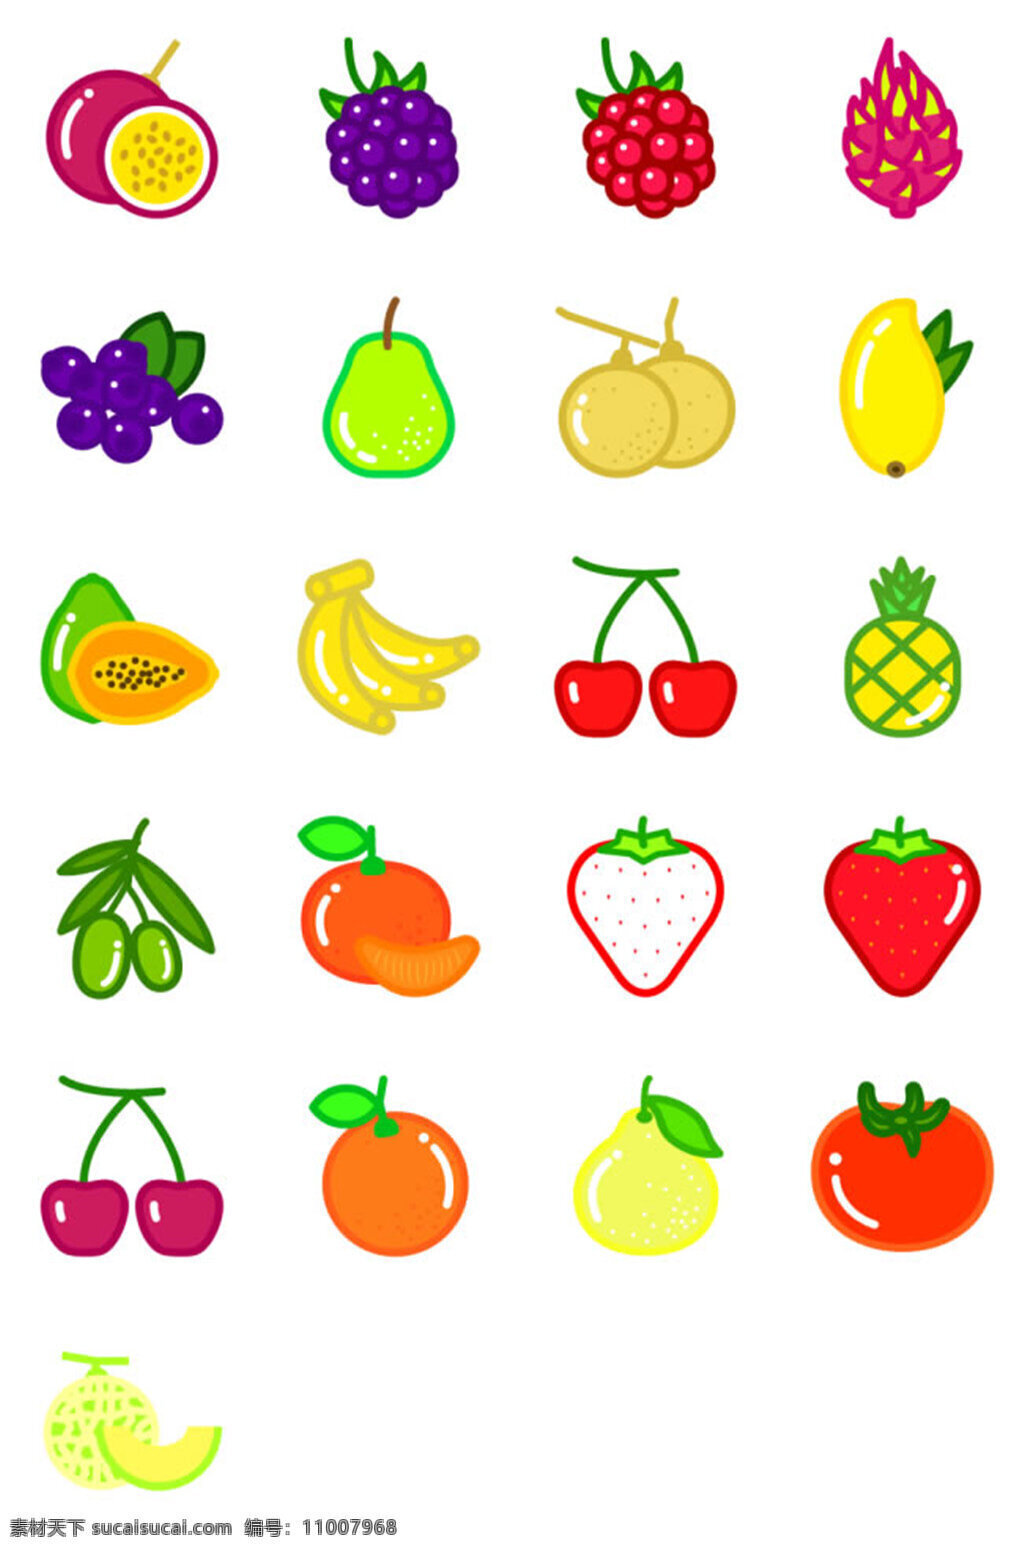 美味 水果 图标素材 苹果 香蕉 车厘子 草莓 哈密瓜 橙子 番茄 西红柿 梨子 菠萝 樱桃 蓝莓 葡萄 火龙果 木瓜 美味水